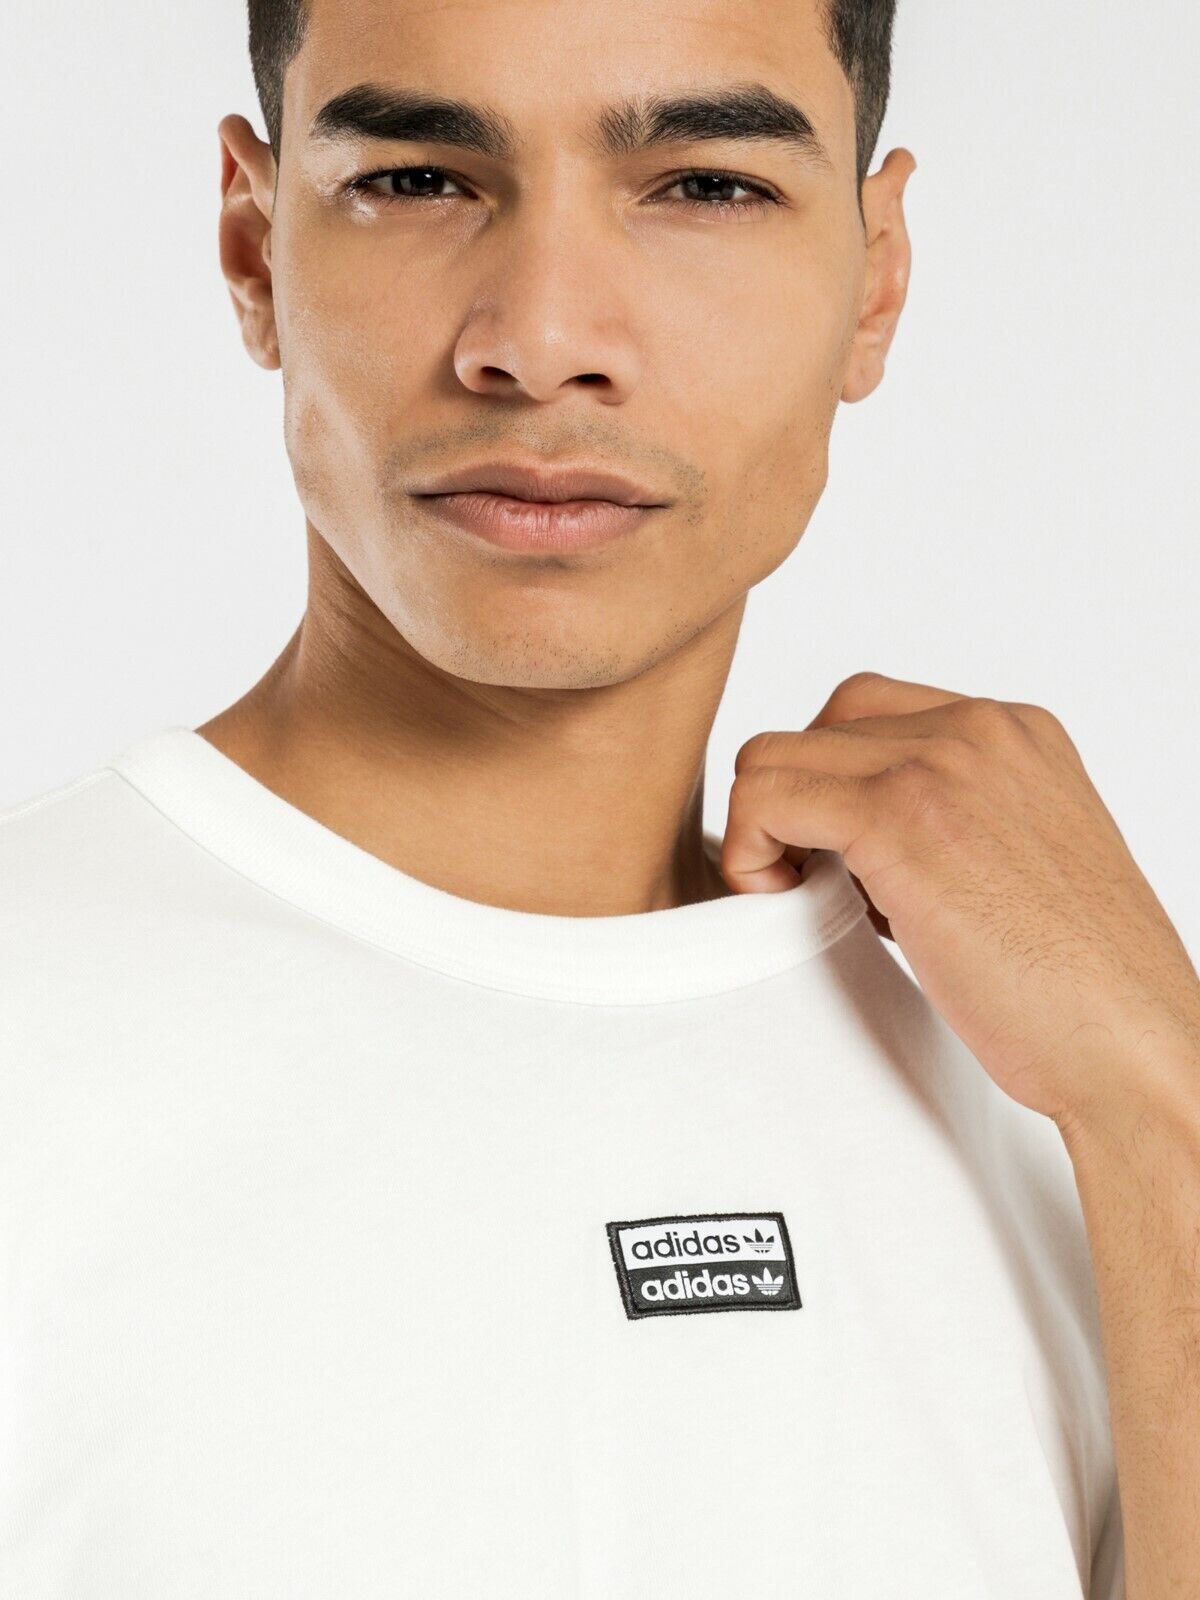 Adidas Men's Originals R.Y.V. T-shirt 2019